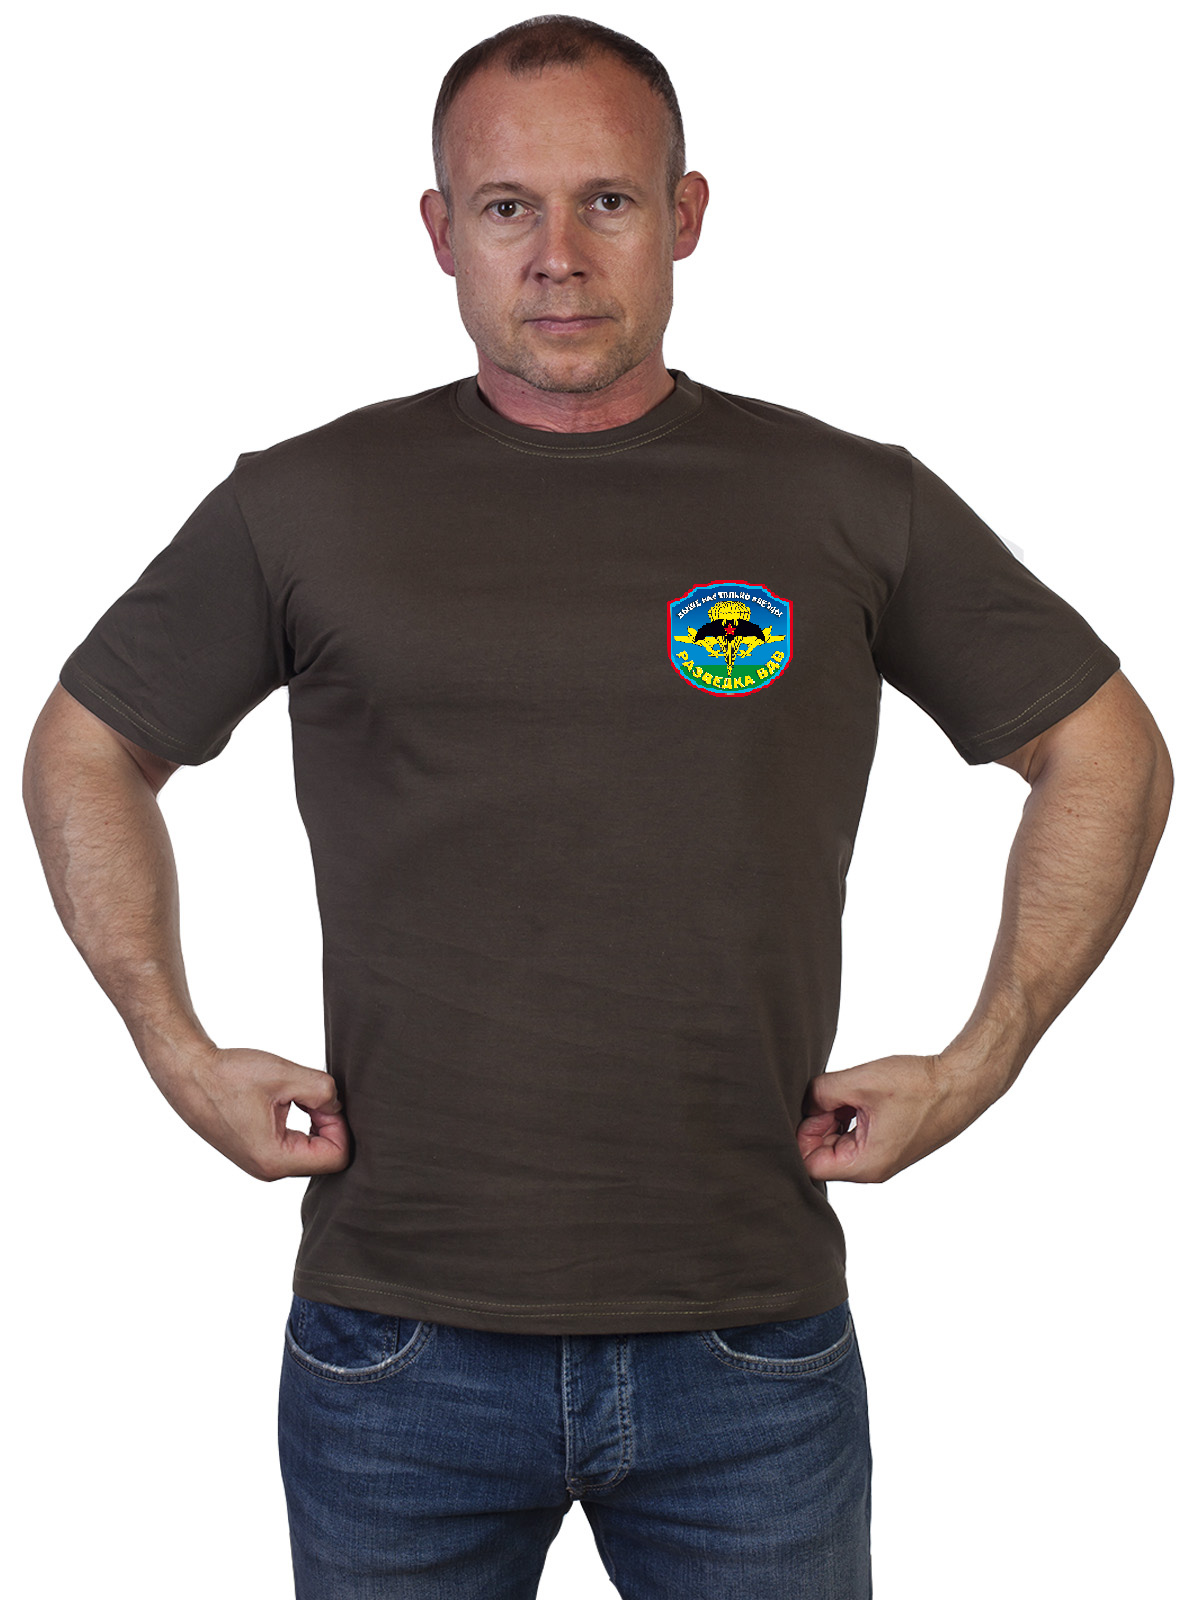 Оливковая футболка с девизом Разведки ВДВ 